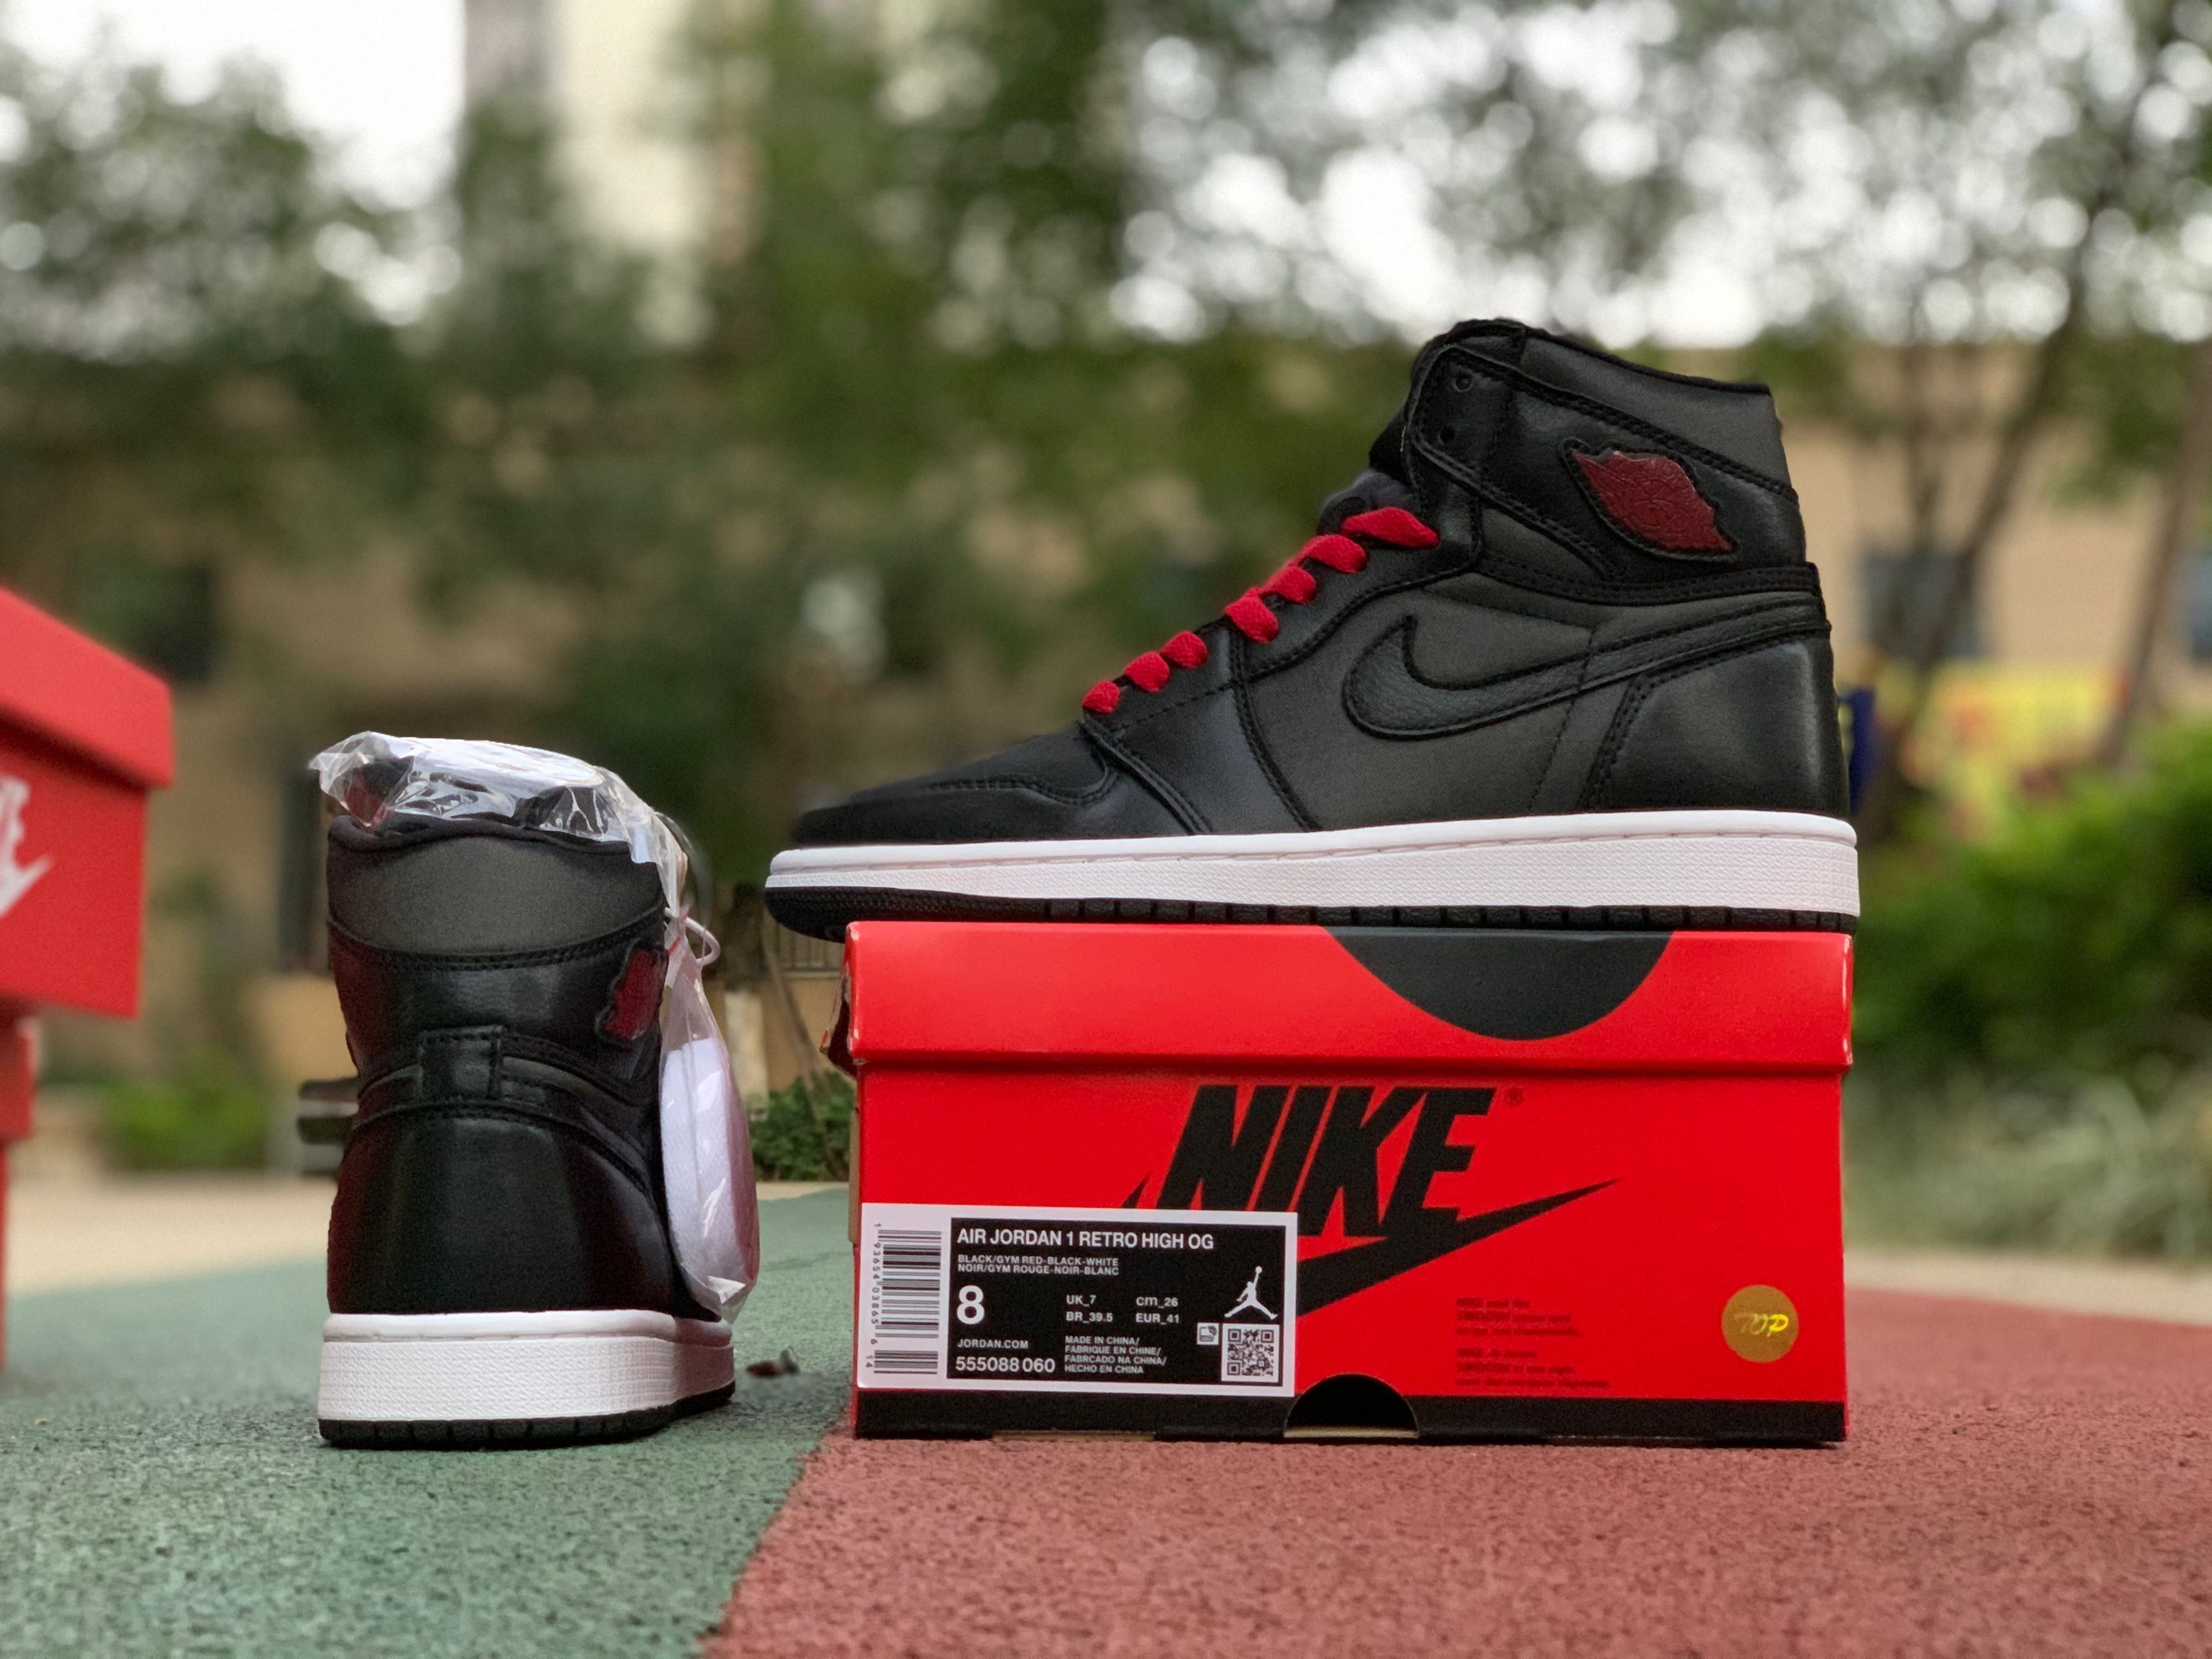 Nike Air Jordan 1 Retro High Og Black Gym Red 555088 060 14 - www.kickbulk.co